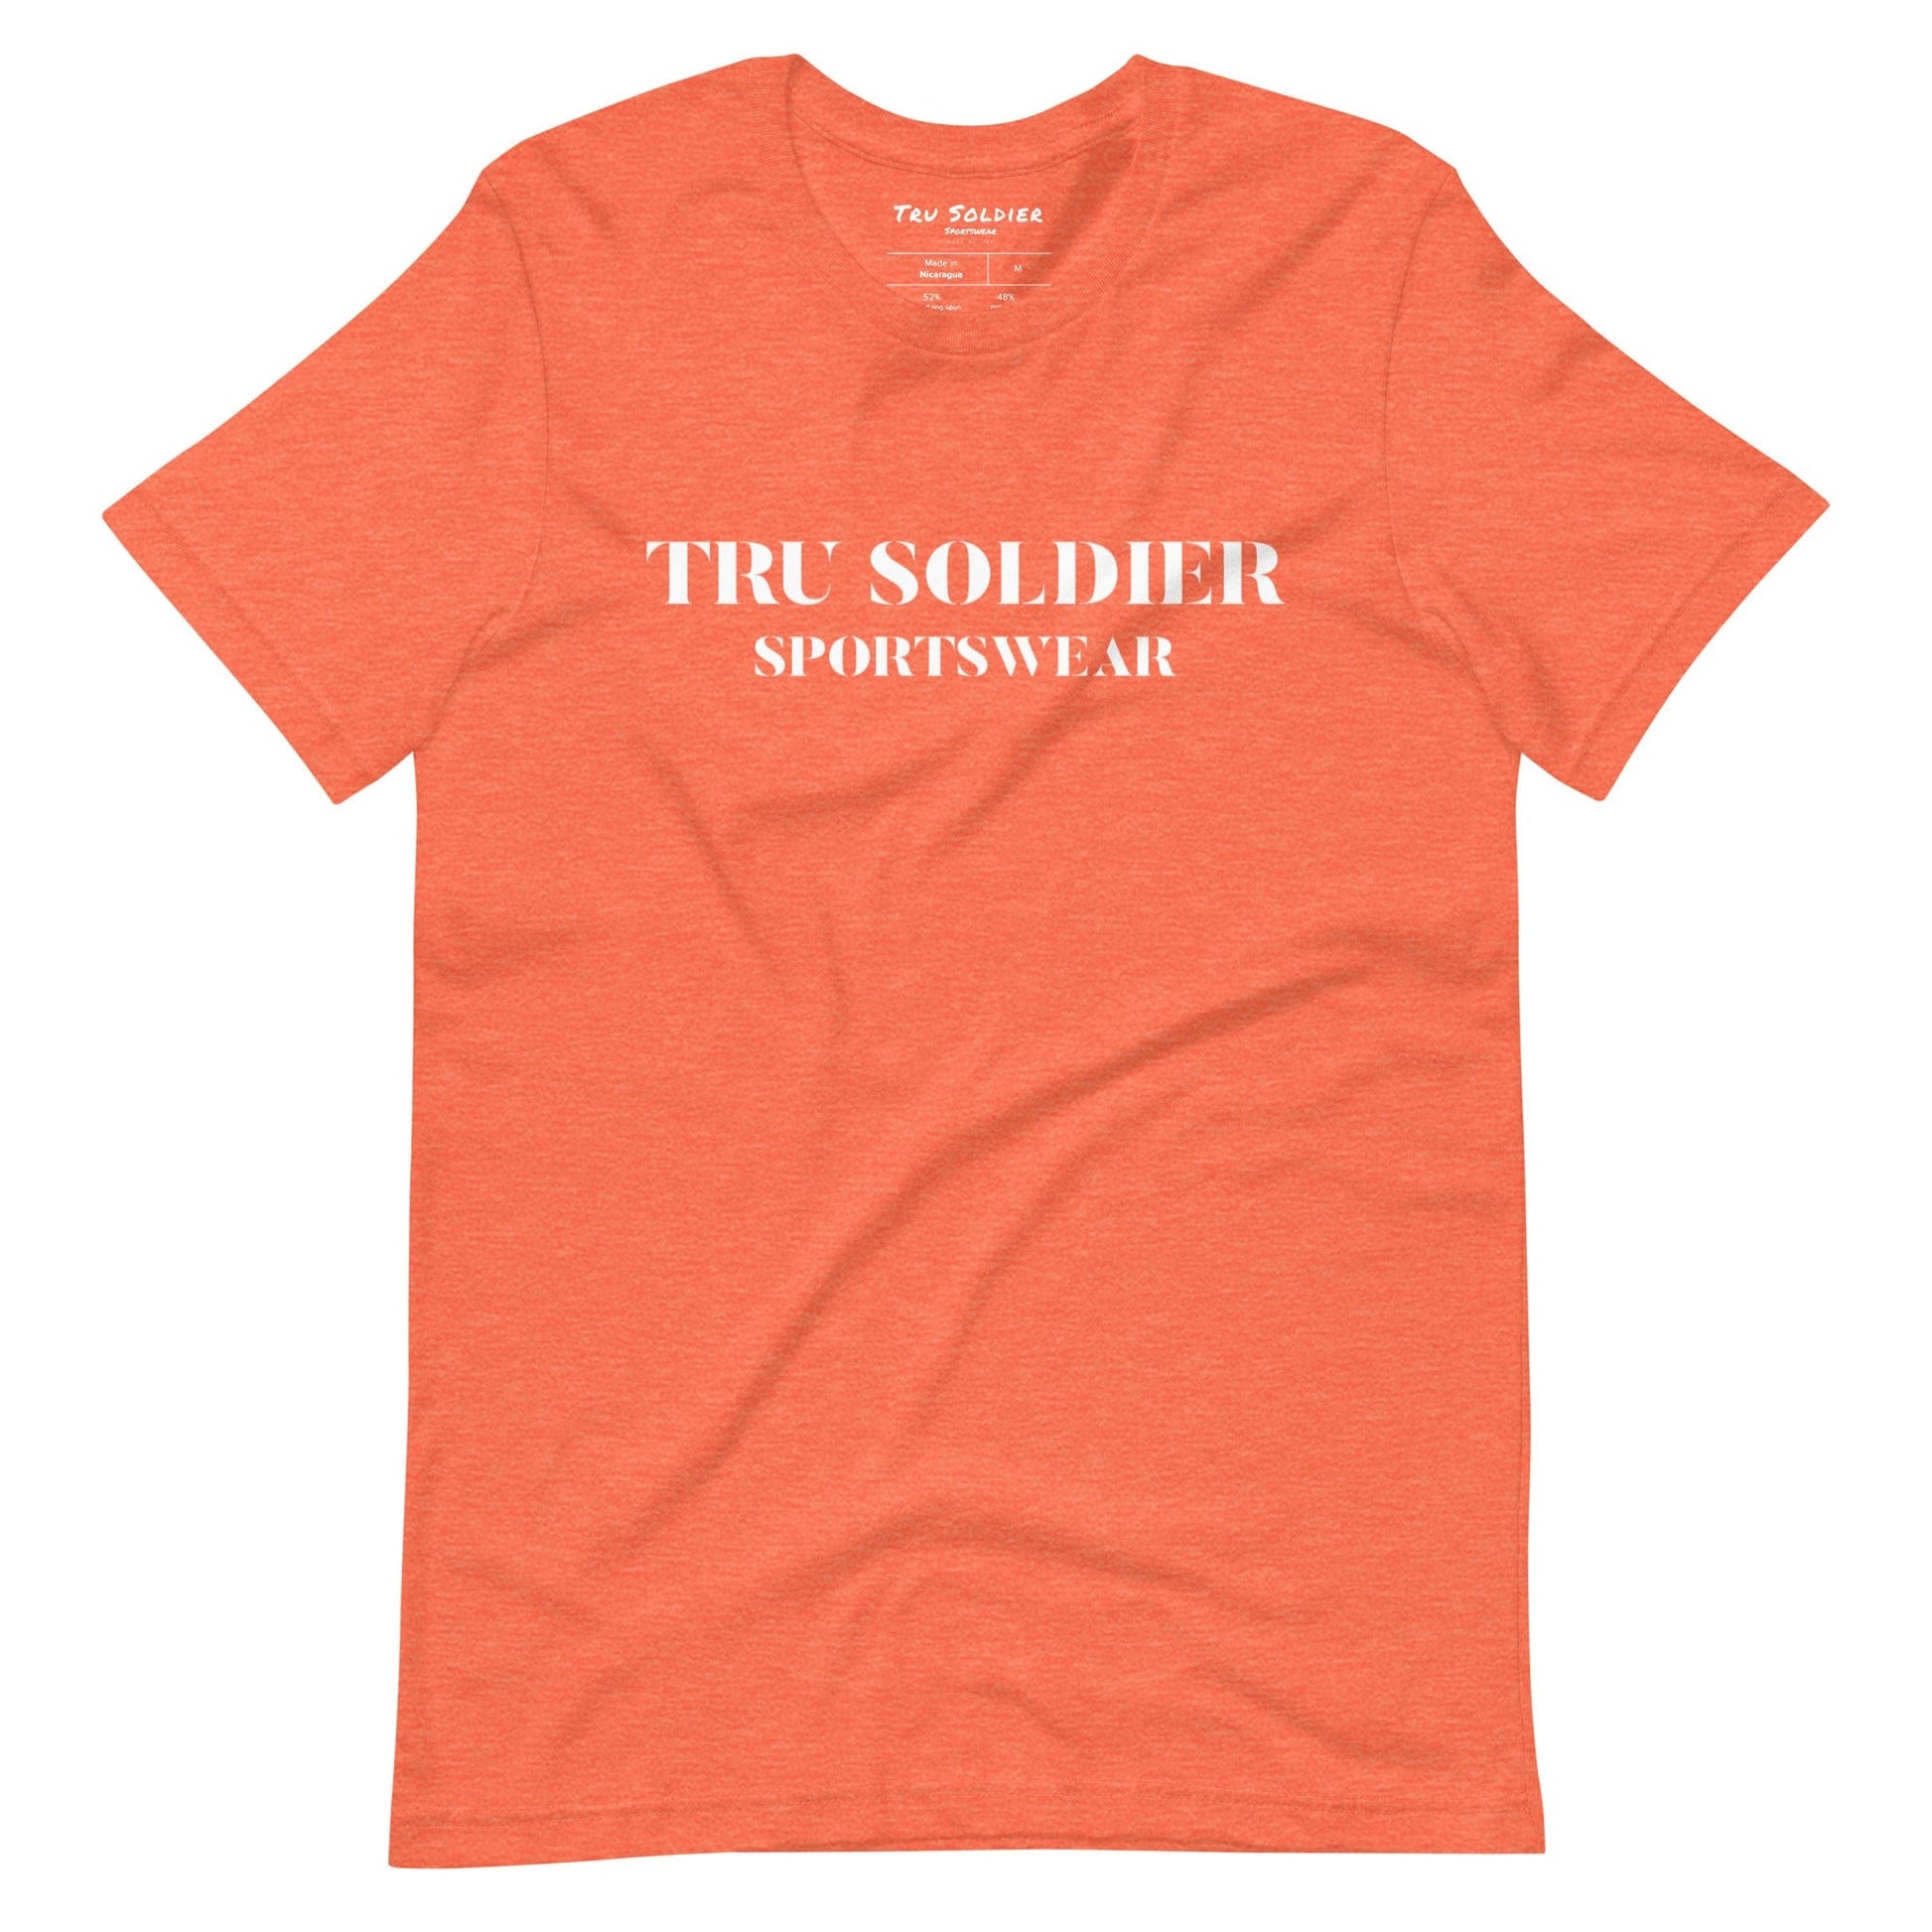 Tru Soldier Sportswear  Heather Orange / S Tru Soldier Sportswear t-shirt